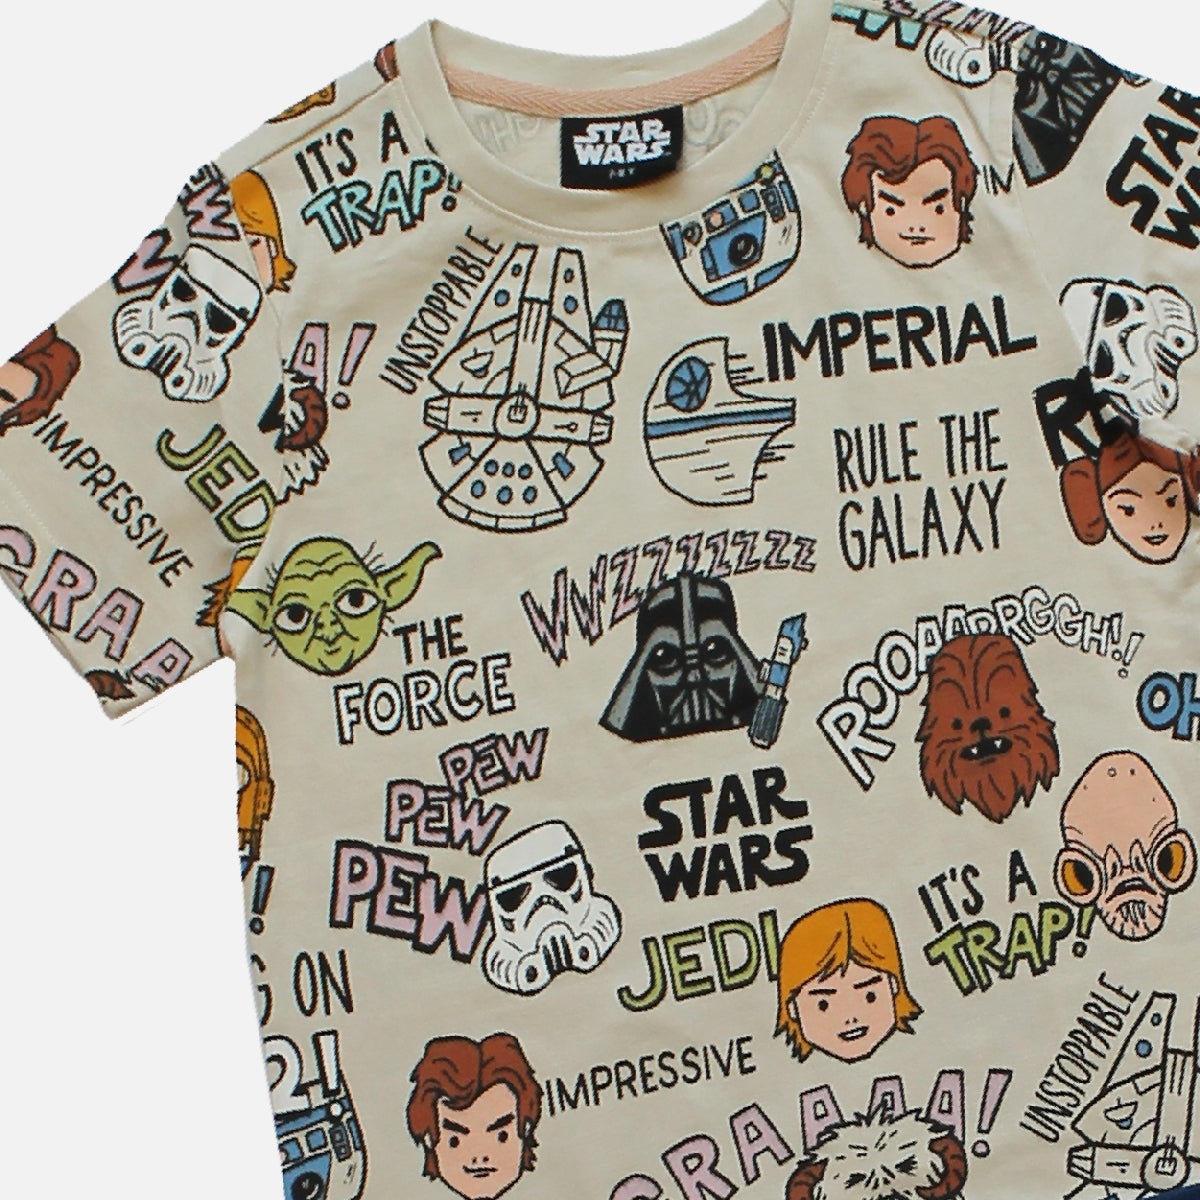 Star Wars Short & Tshirt Outerwear Set